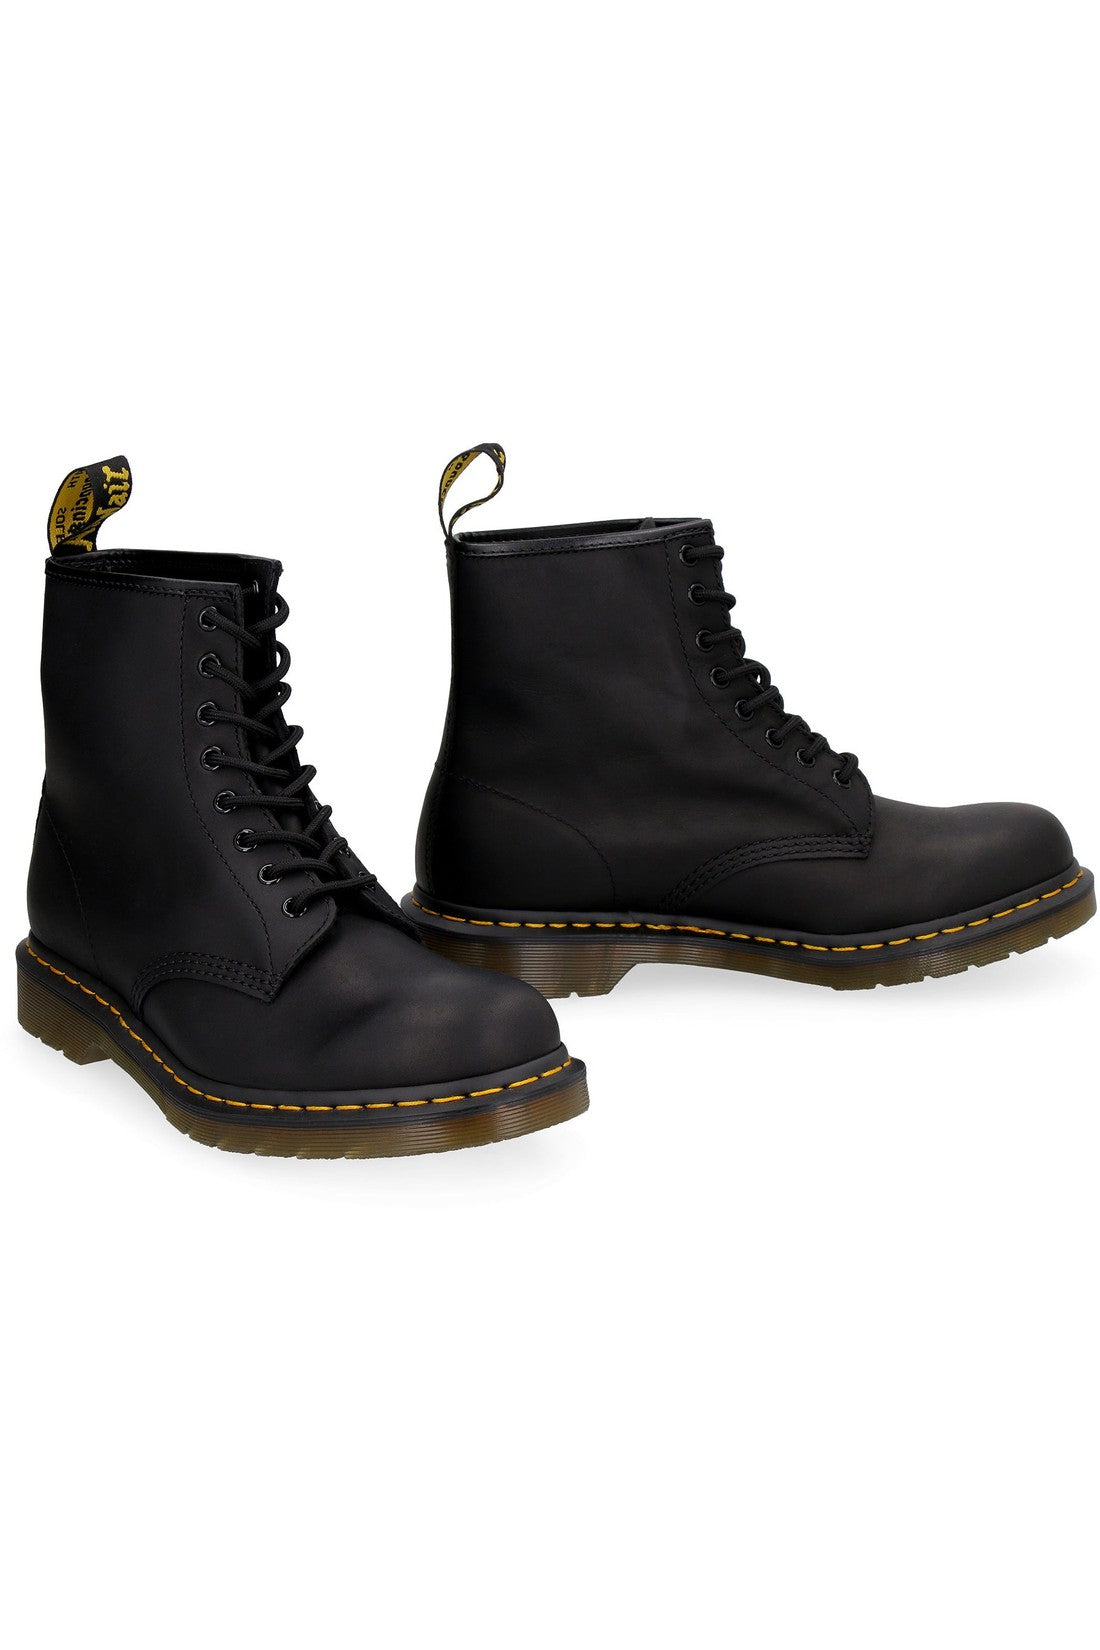 Dr. Martens-OUTLET-SALE-1460 leather combat-boots-ARCHIVIST